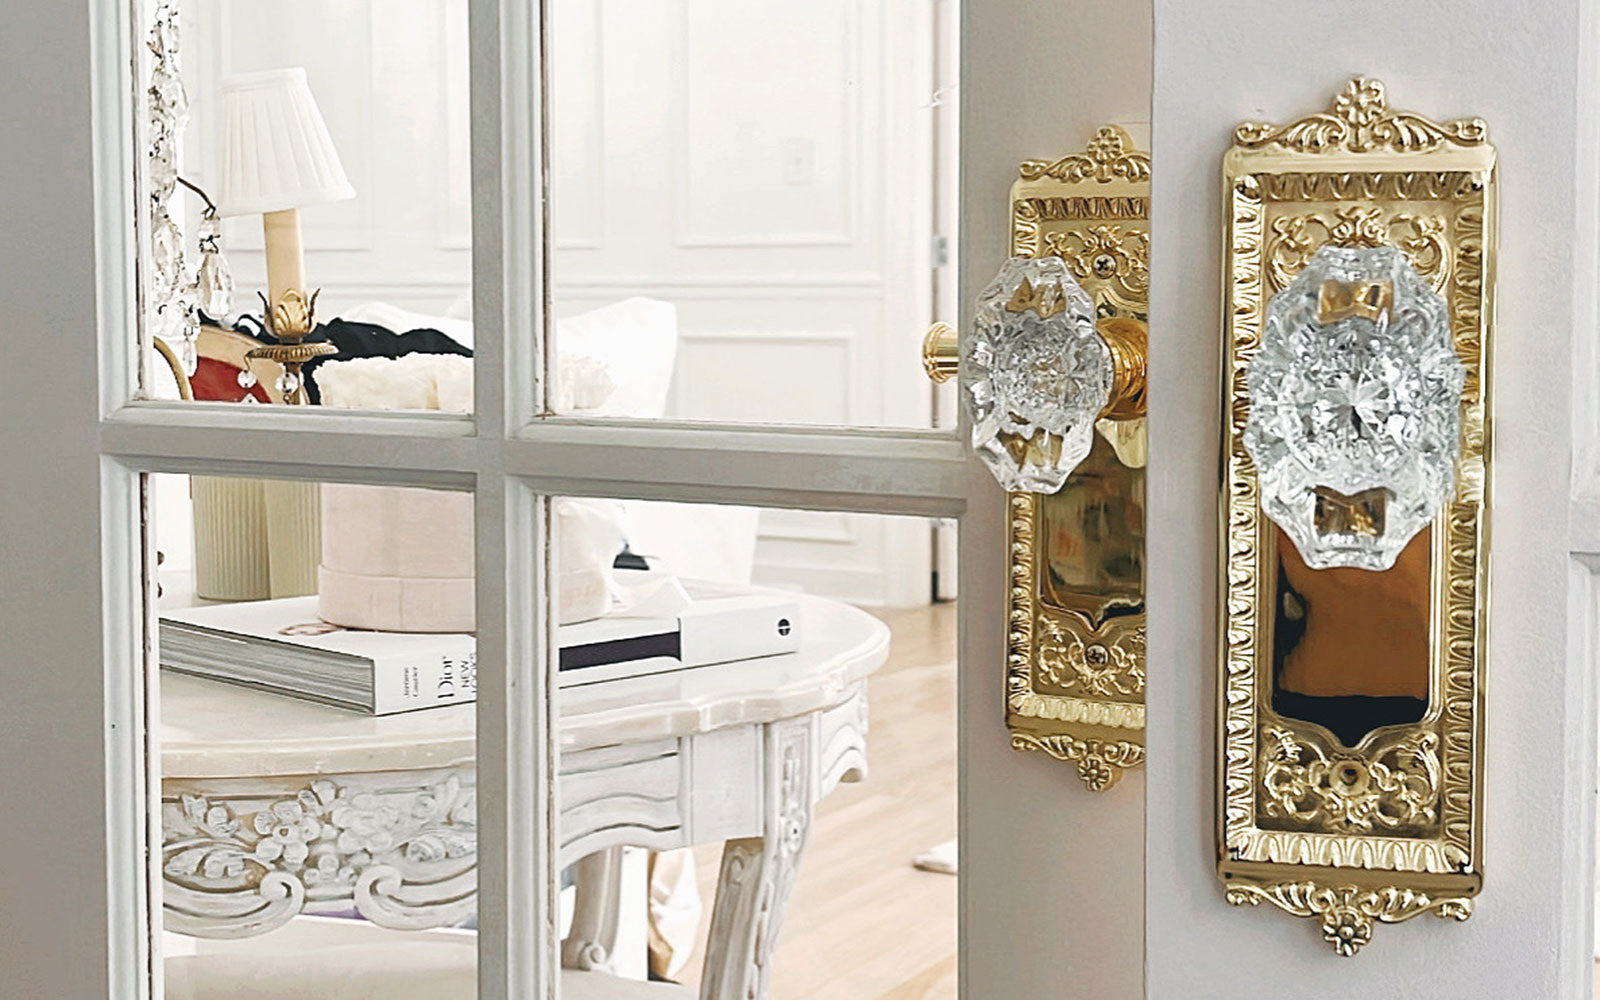 J'Adore Lexie Couture's Posh Door Details